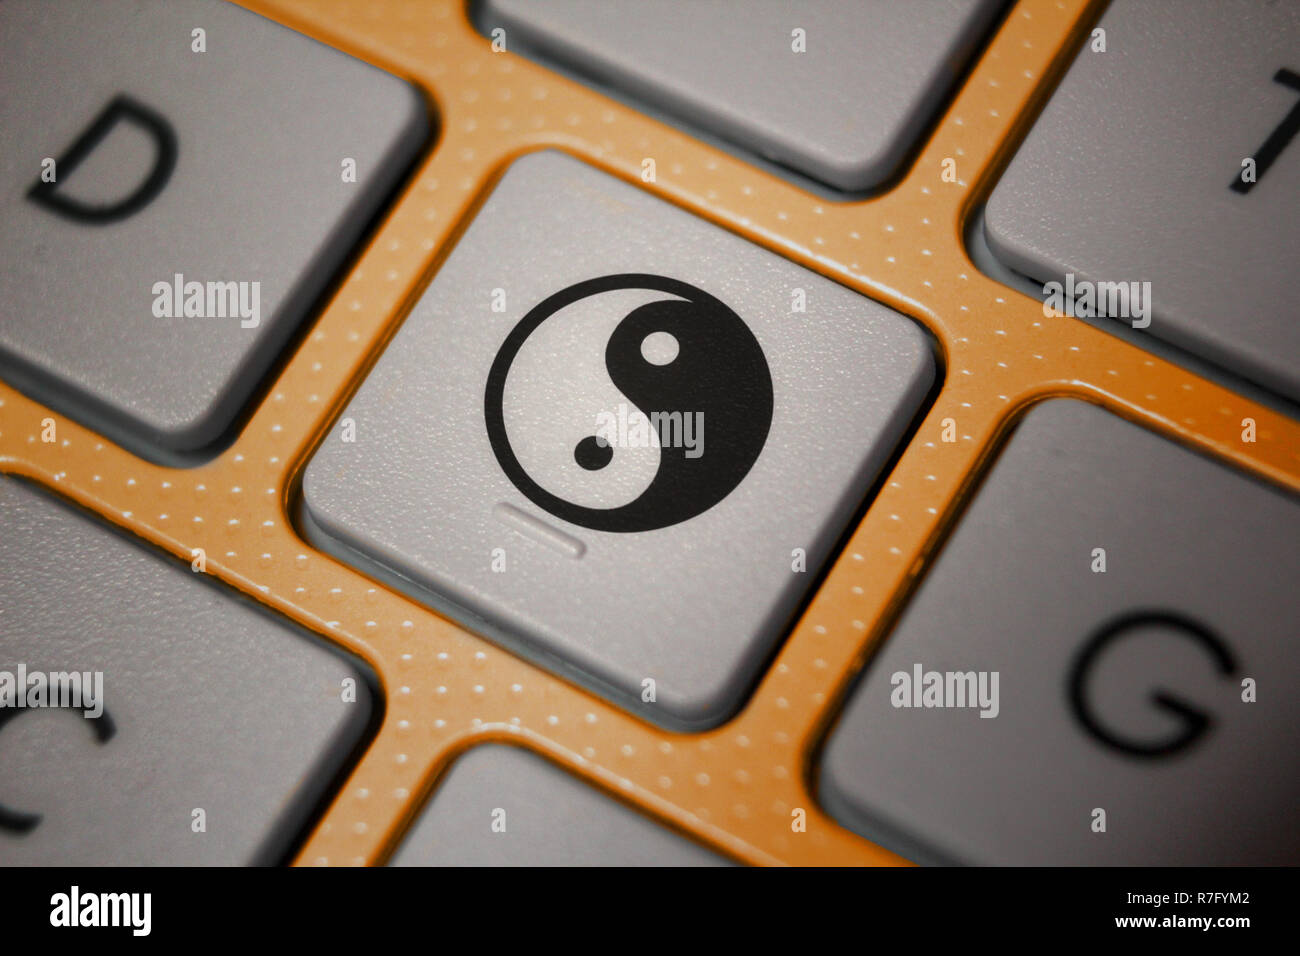 Bild von Ying-yang Symbol auf dem Computer Tastatur Stockfotografie - Alamy